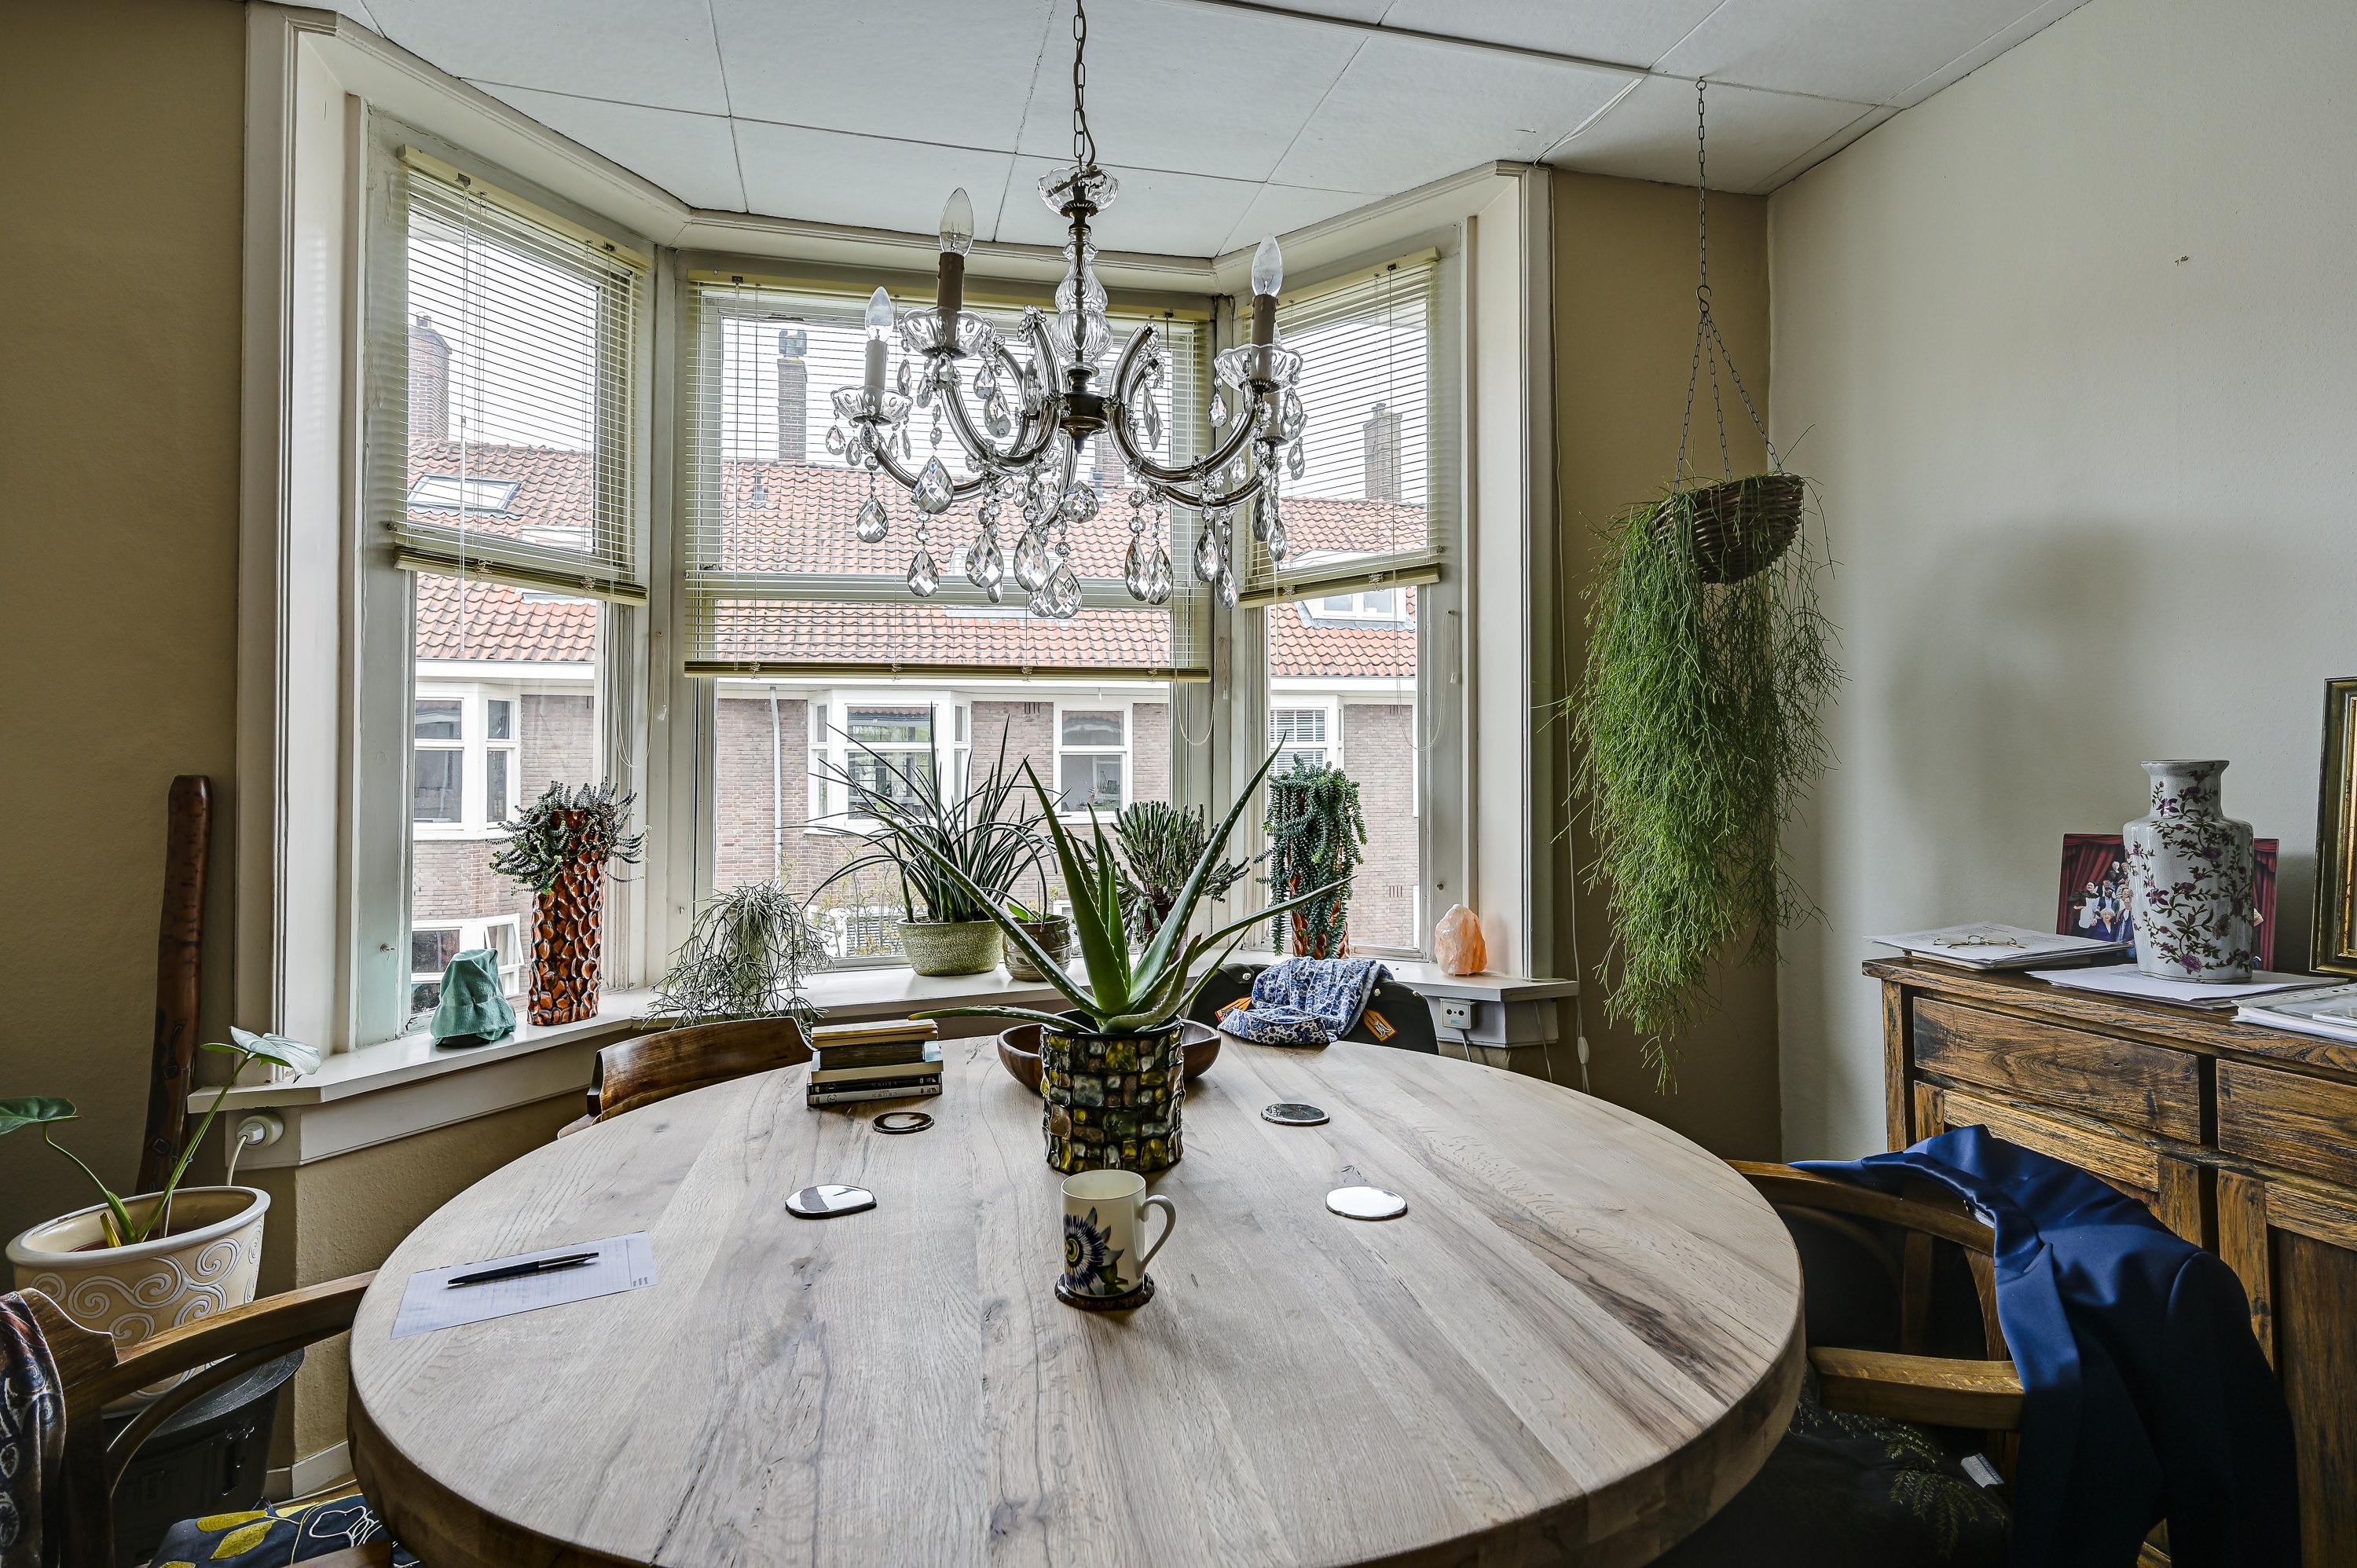 Woning / appartement - Amsterdam - Piet Gijzenbrugstraat 13